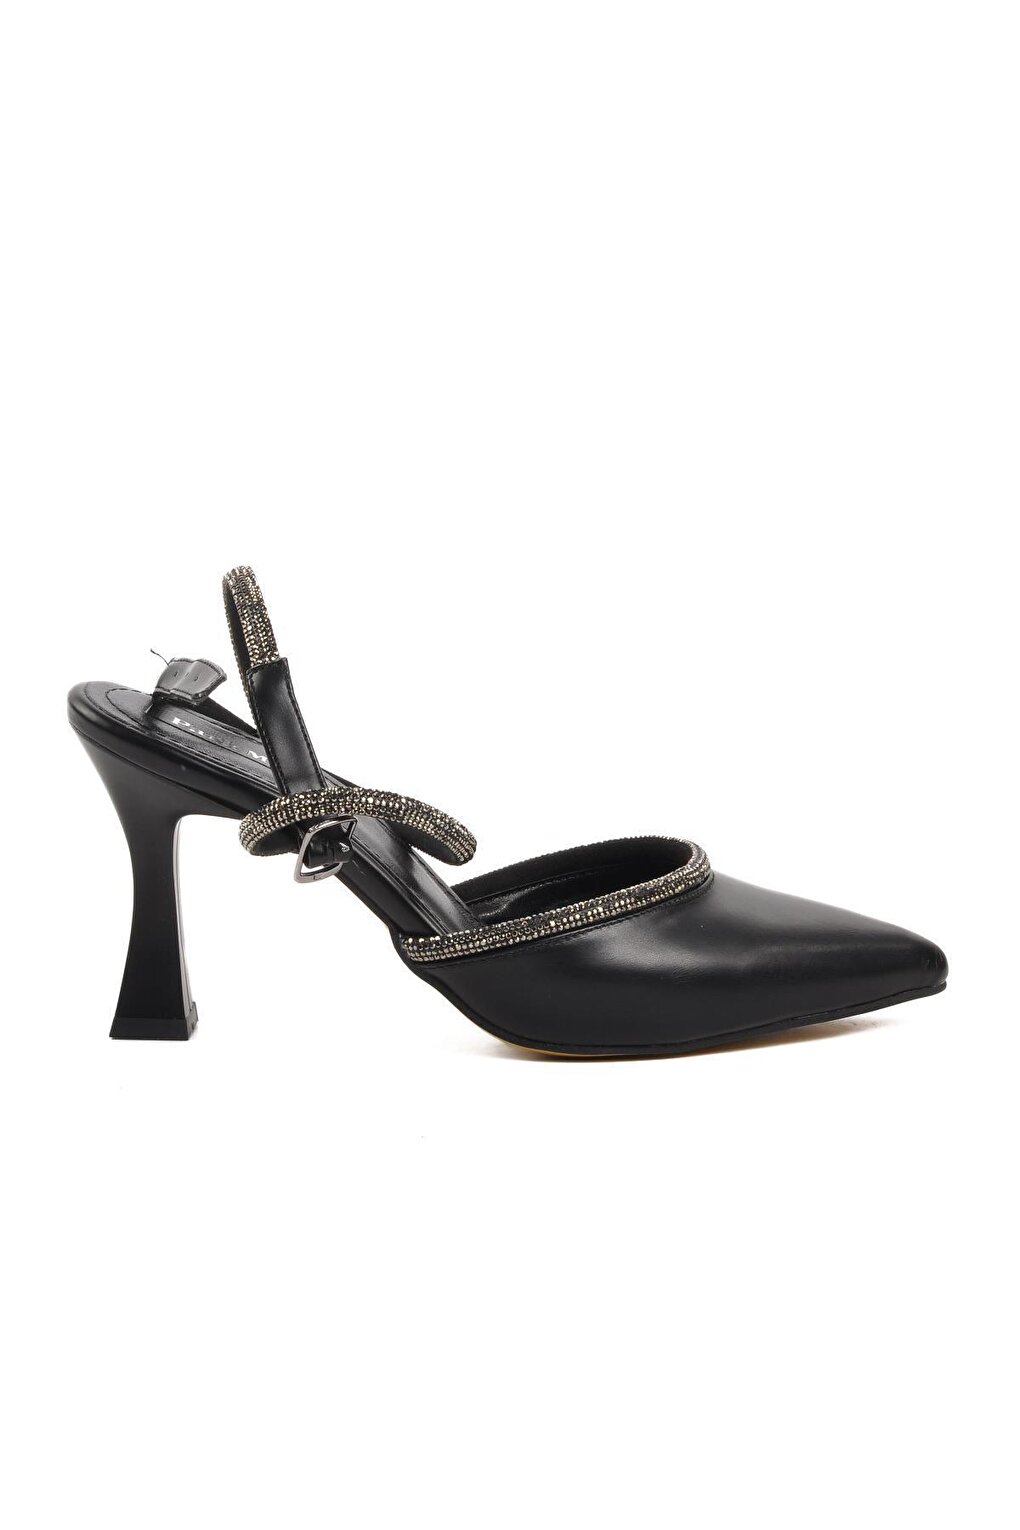 K551 Черные женские вечерние туфли Ayakmod цена и фото